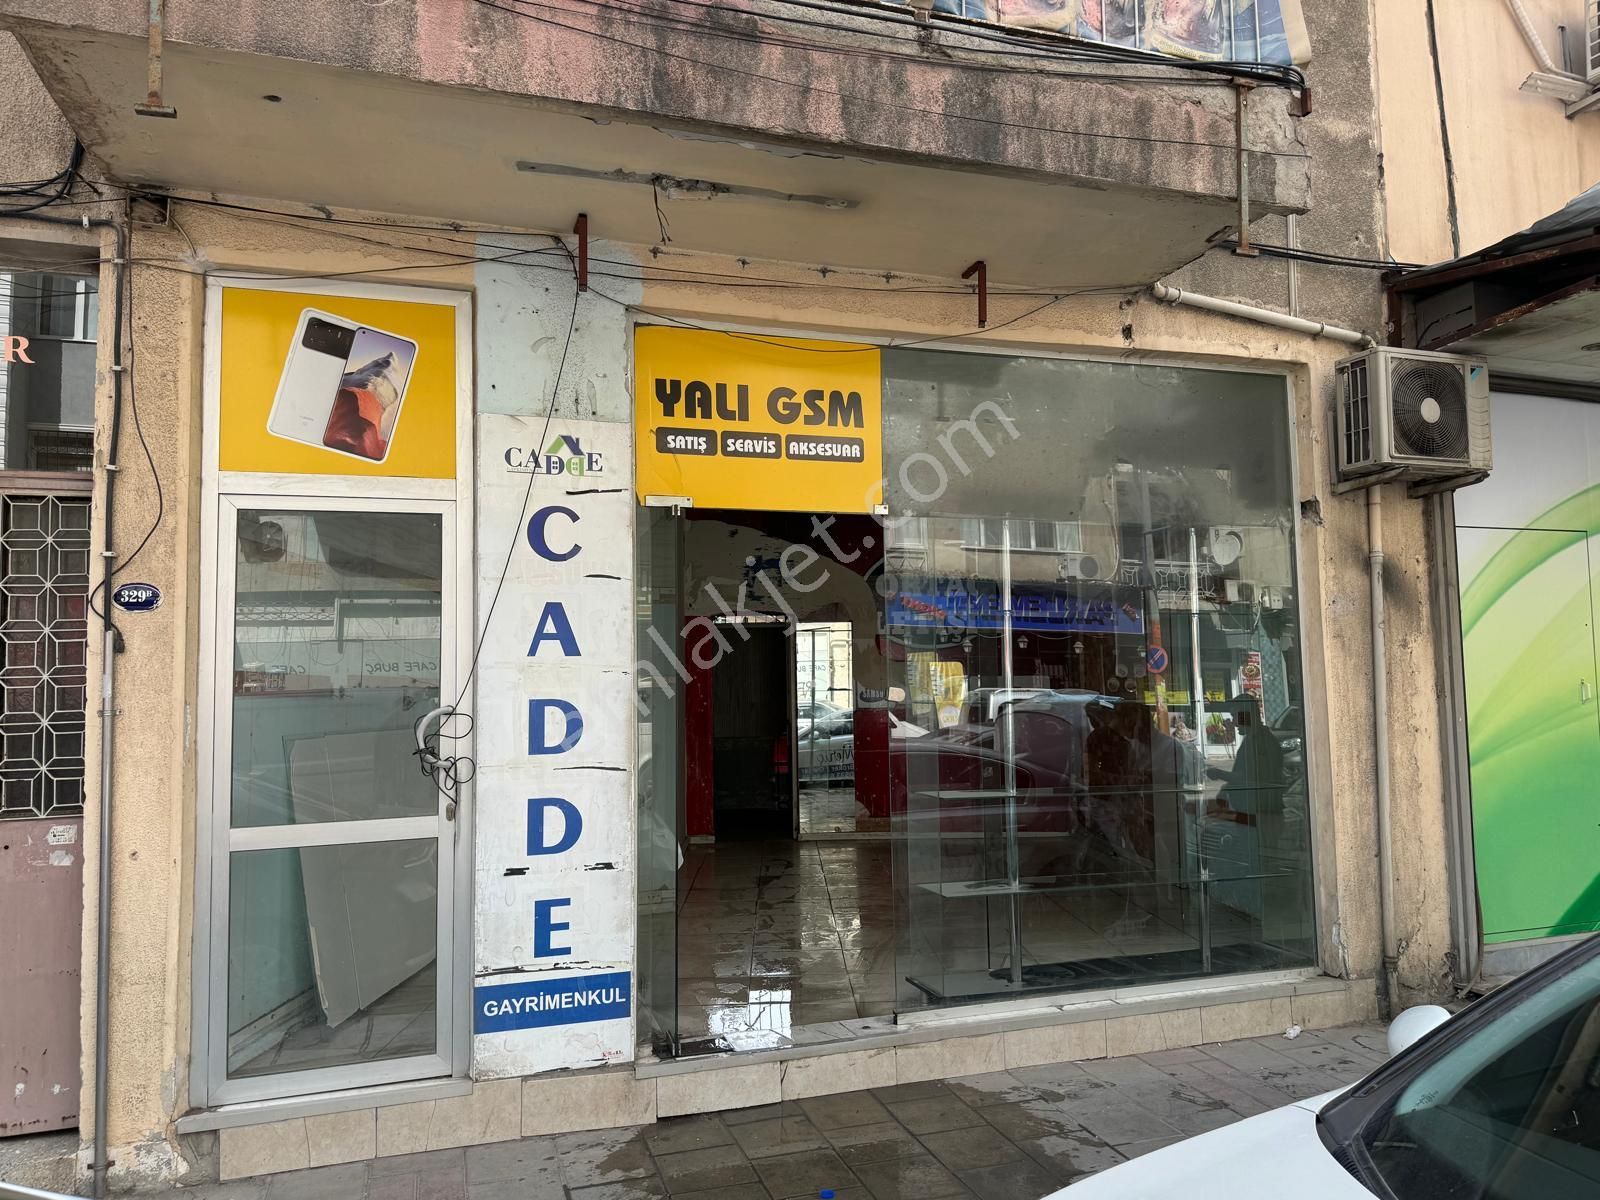 İzmir Buca Kiralık Dükkan & Mağaza  MENDERES CADDESİNDE 40 M² ÜST KAT 40 M² ALT KAT KİRALIK DÜKKAN